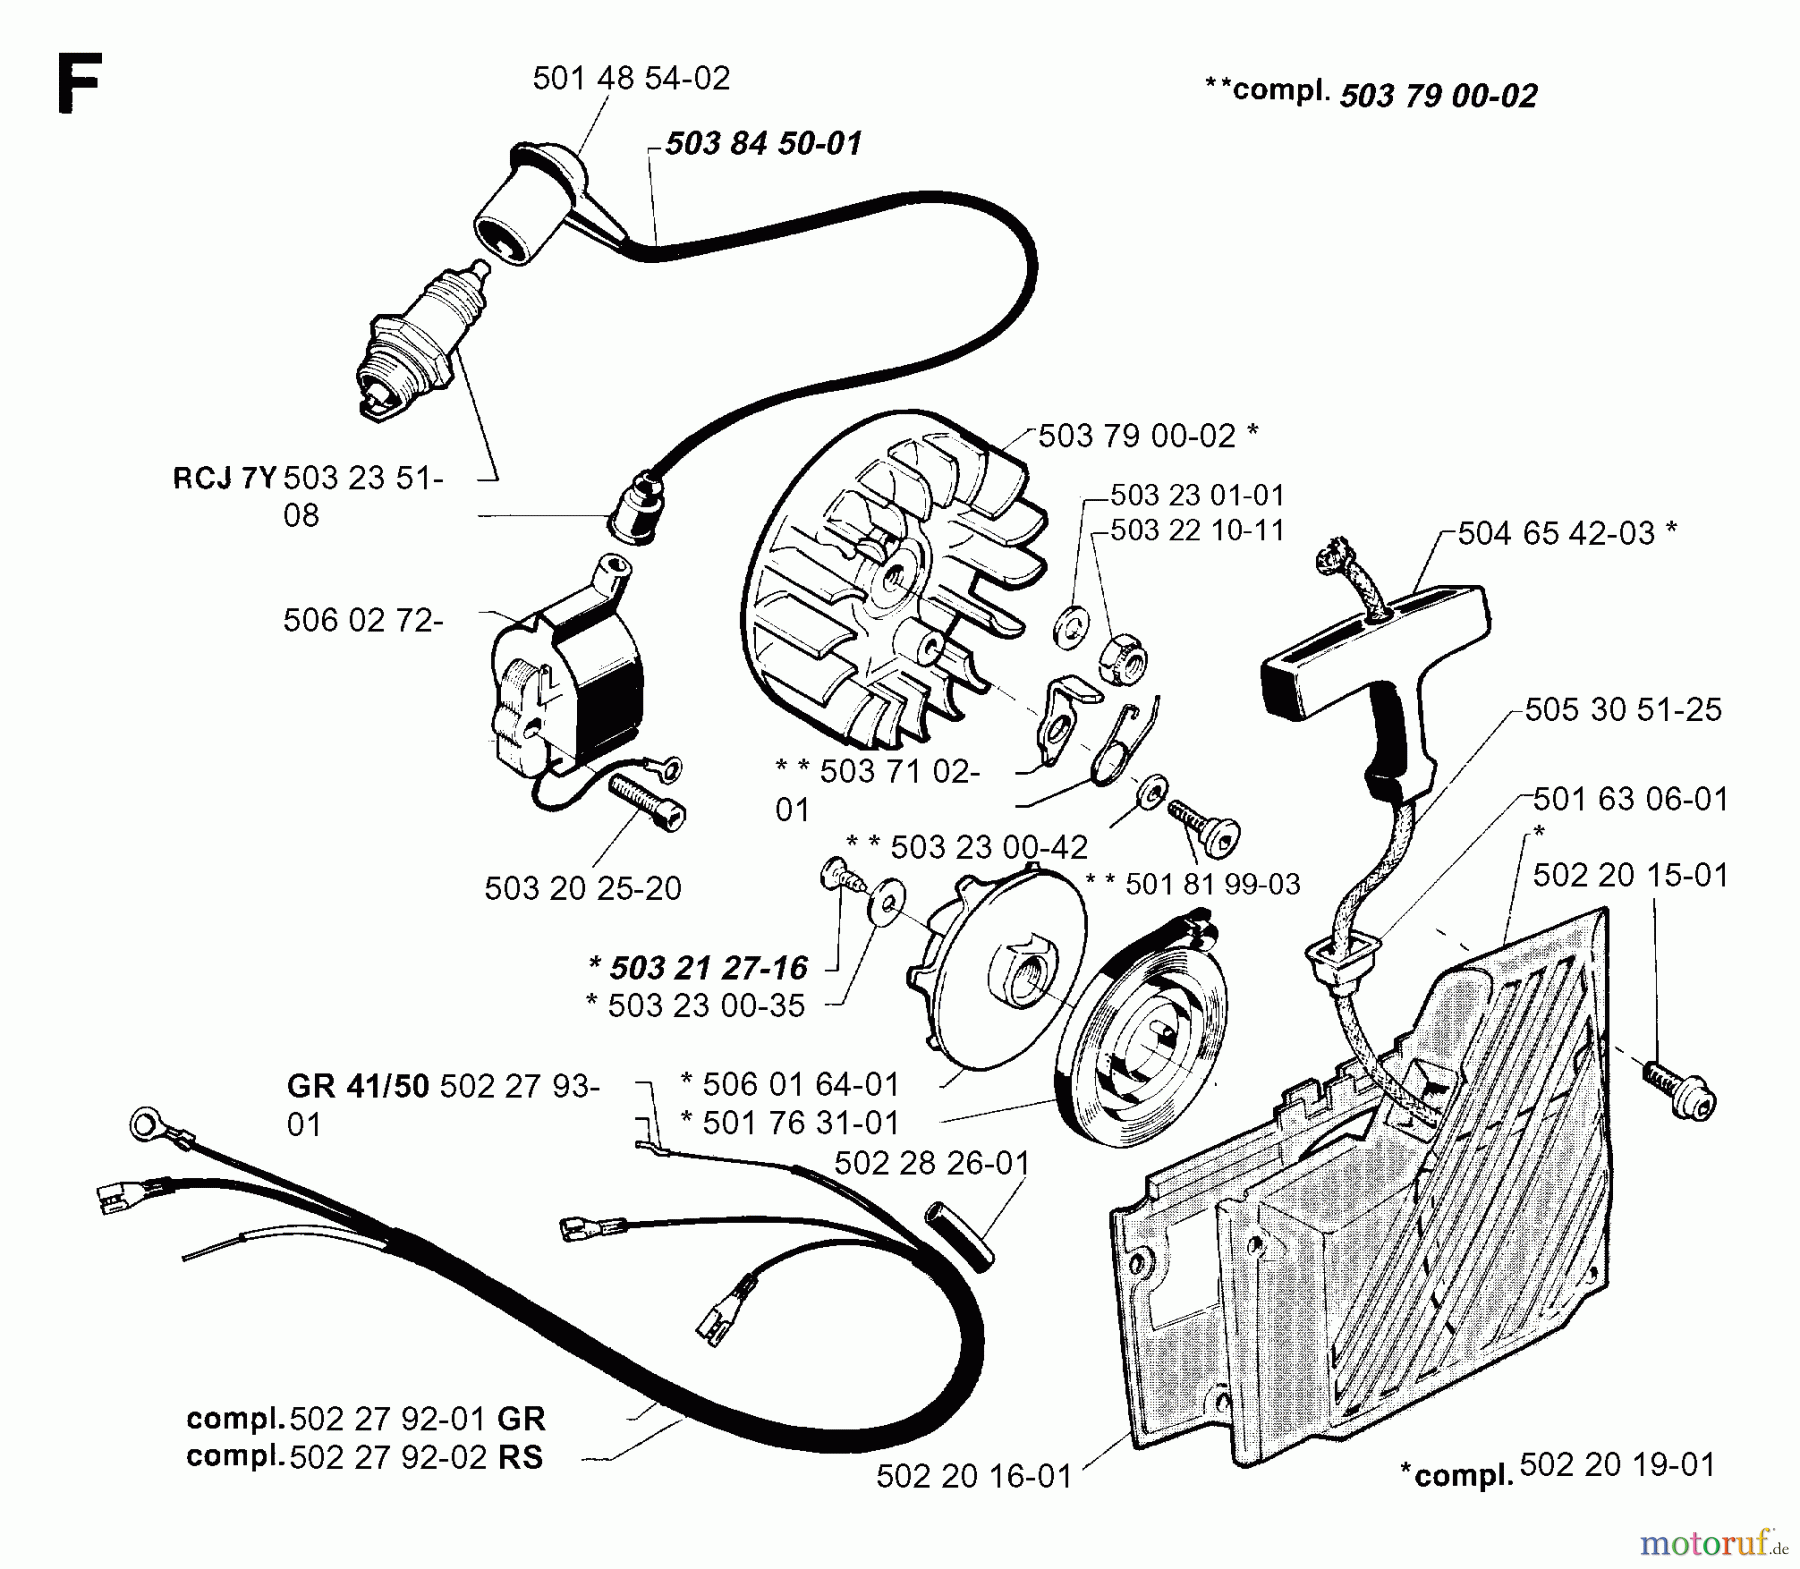  Jonsered Motorsensen, Trimmer GR41 - Jonsered String/Brush Trimmer (1996-10) STARTER